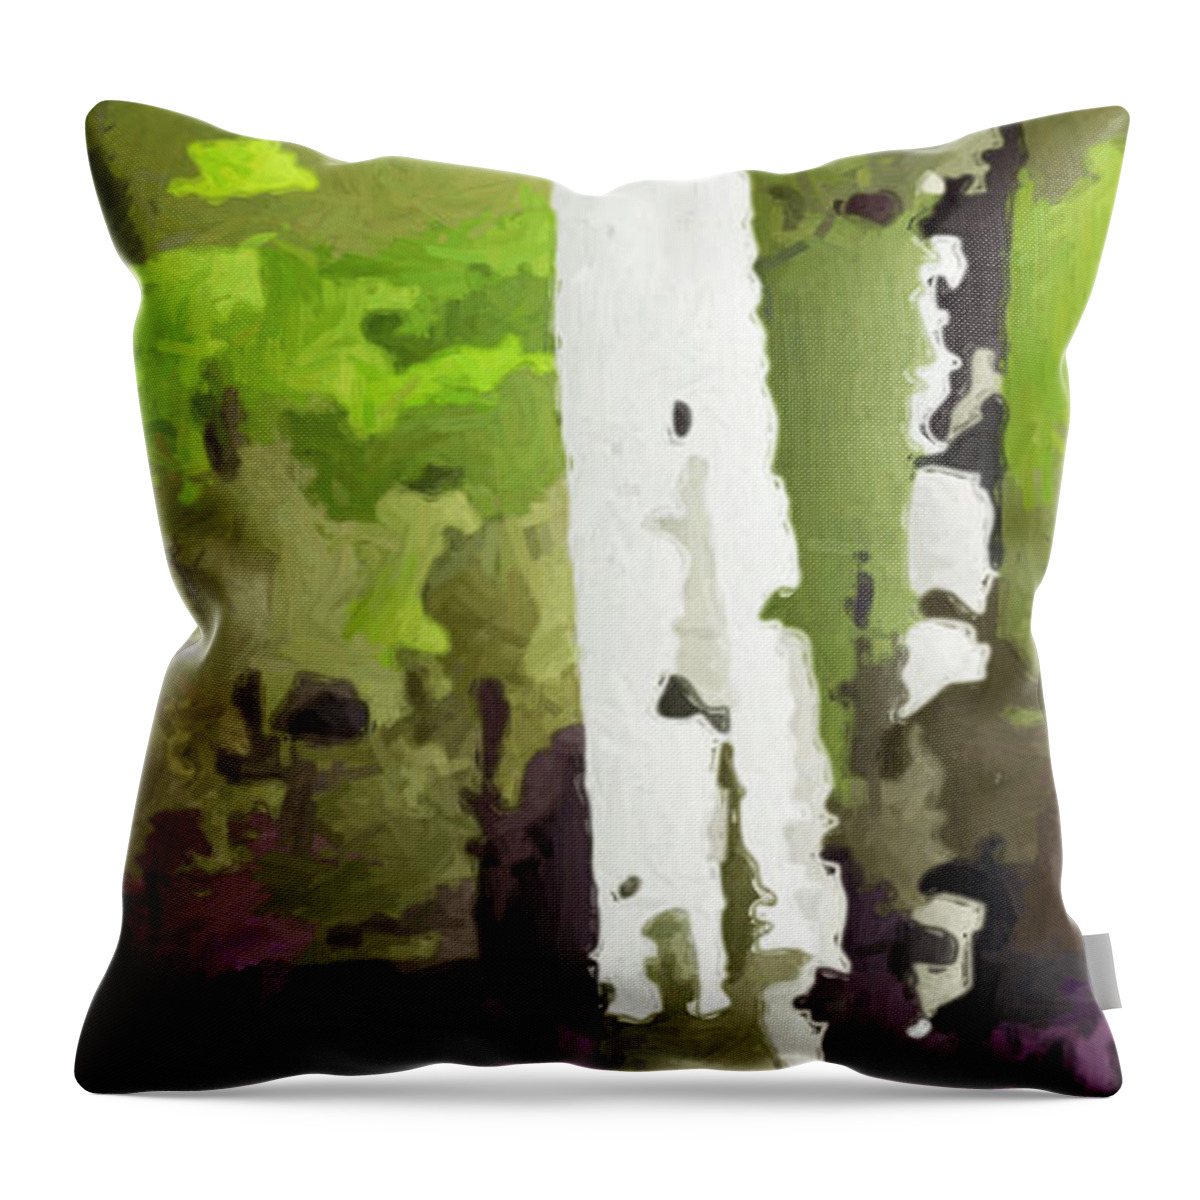 Digital Throw Pillow featuring the digital art Aspens on Boulder Mountain by David Hansen